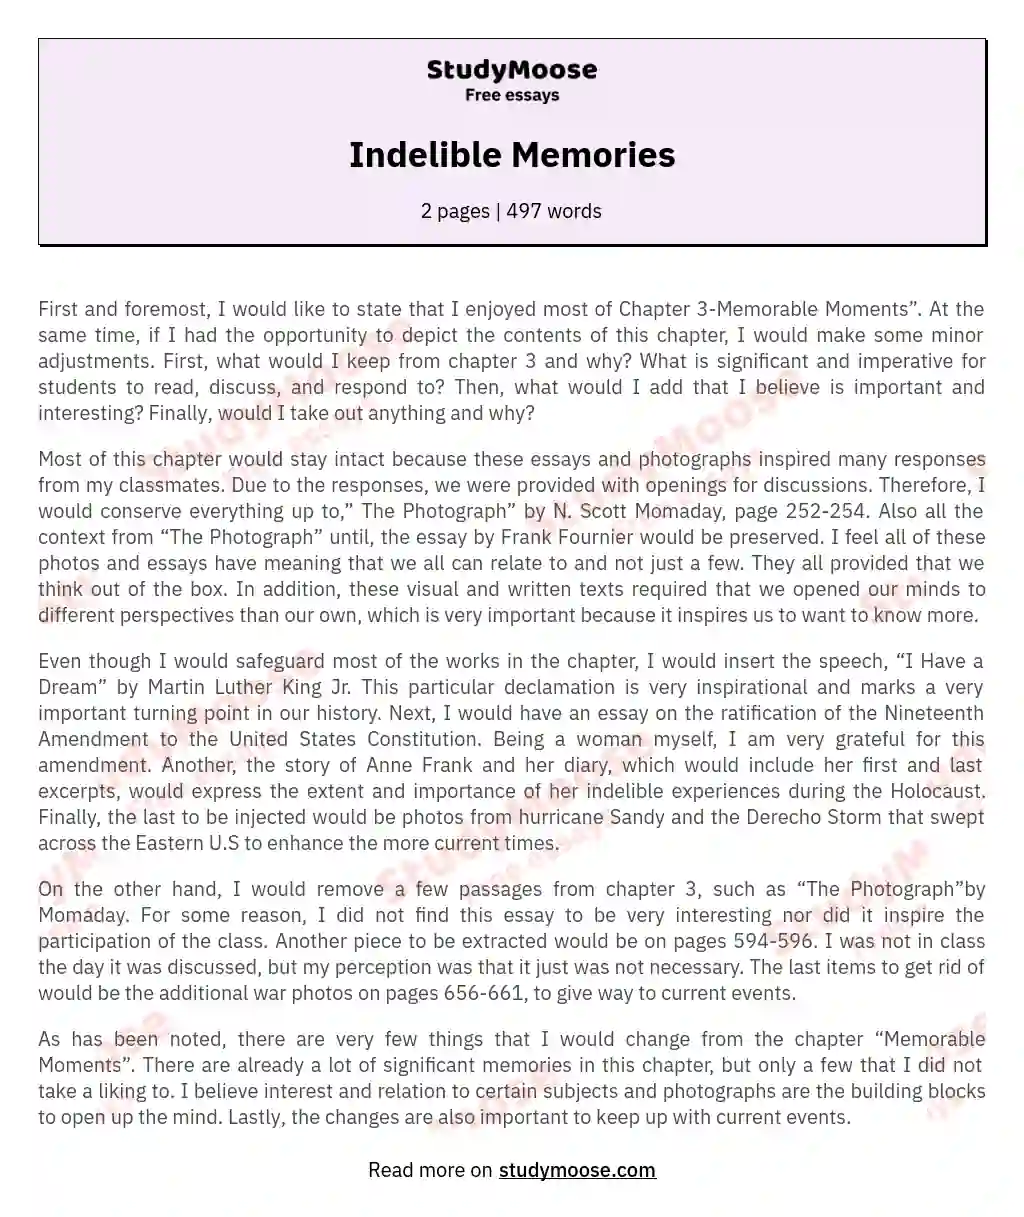 Indelible Memories essay